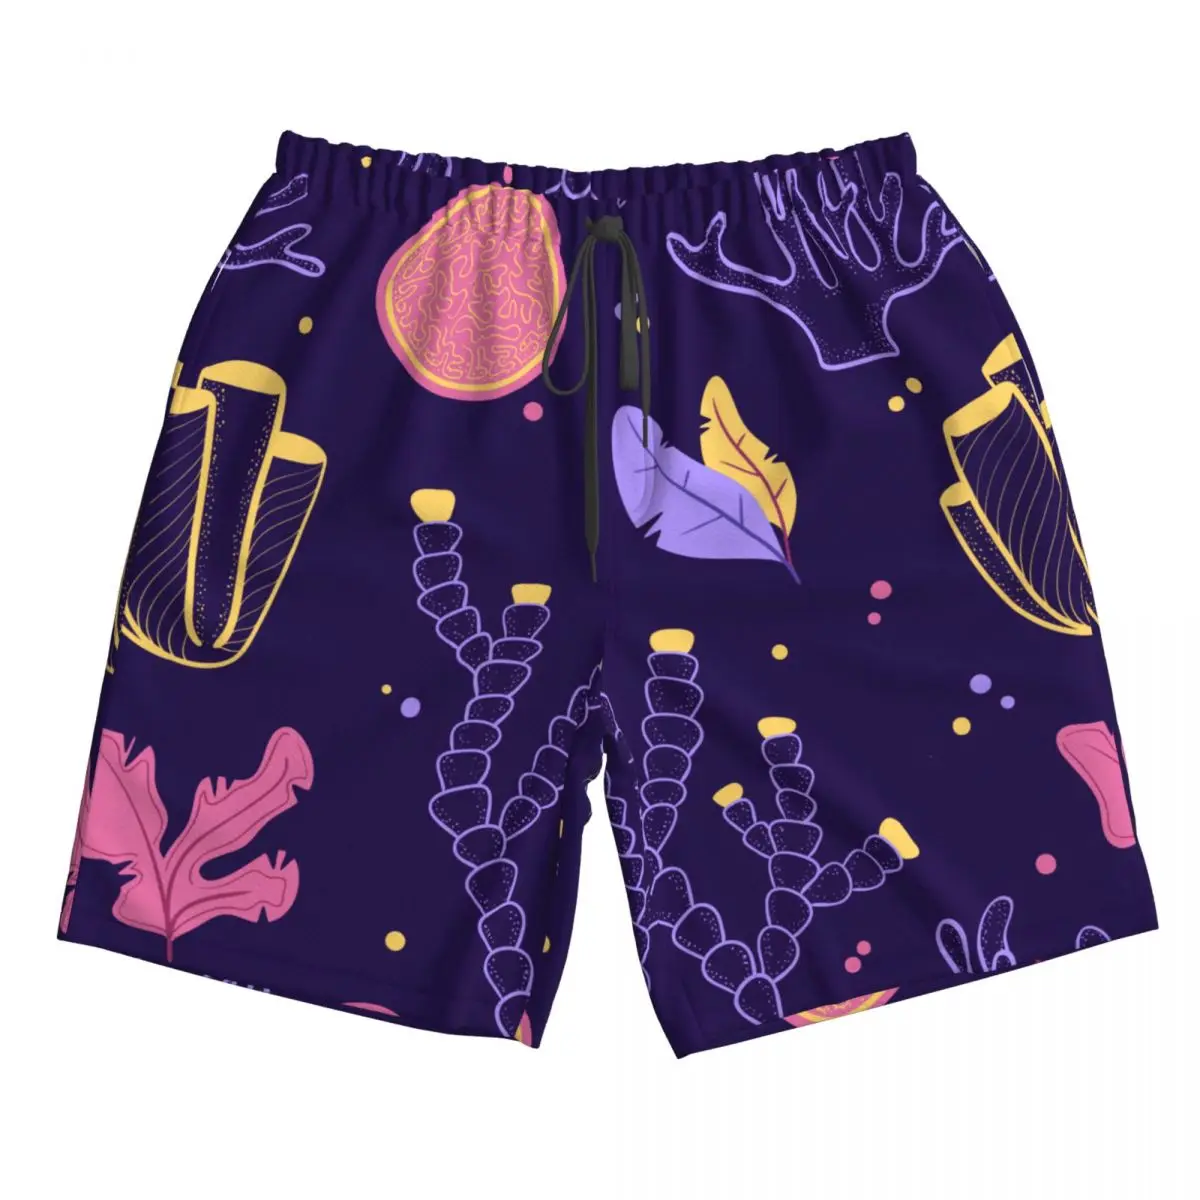 

Быстросохнущие летние мужские пляжные шорты, брифы для мужчин, плавки, плавательные шорты, пляжная одежда, фиолетовый морской пол